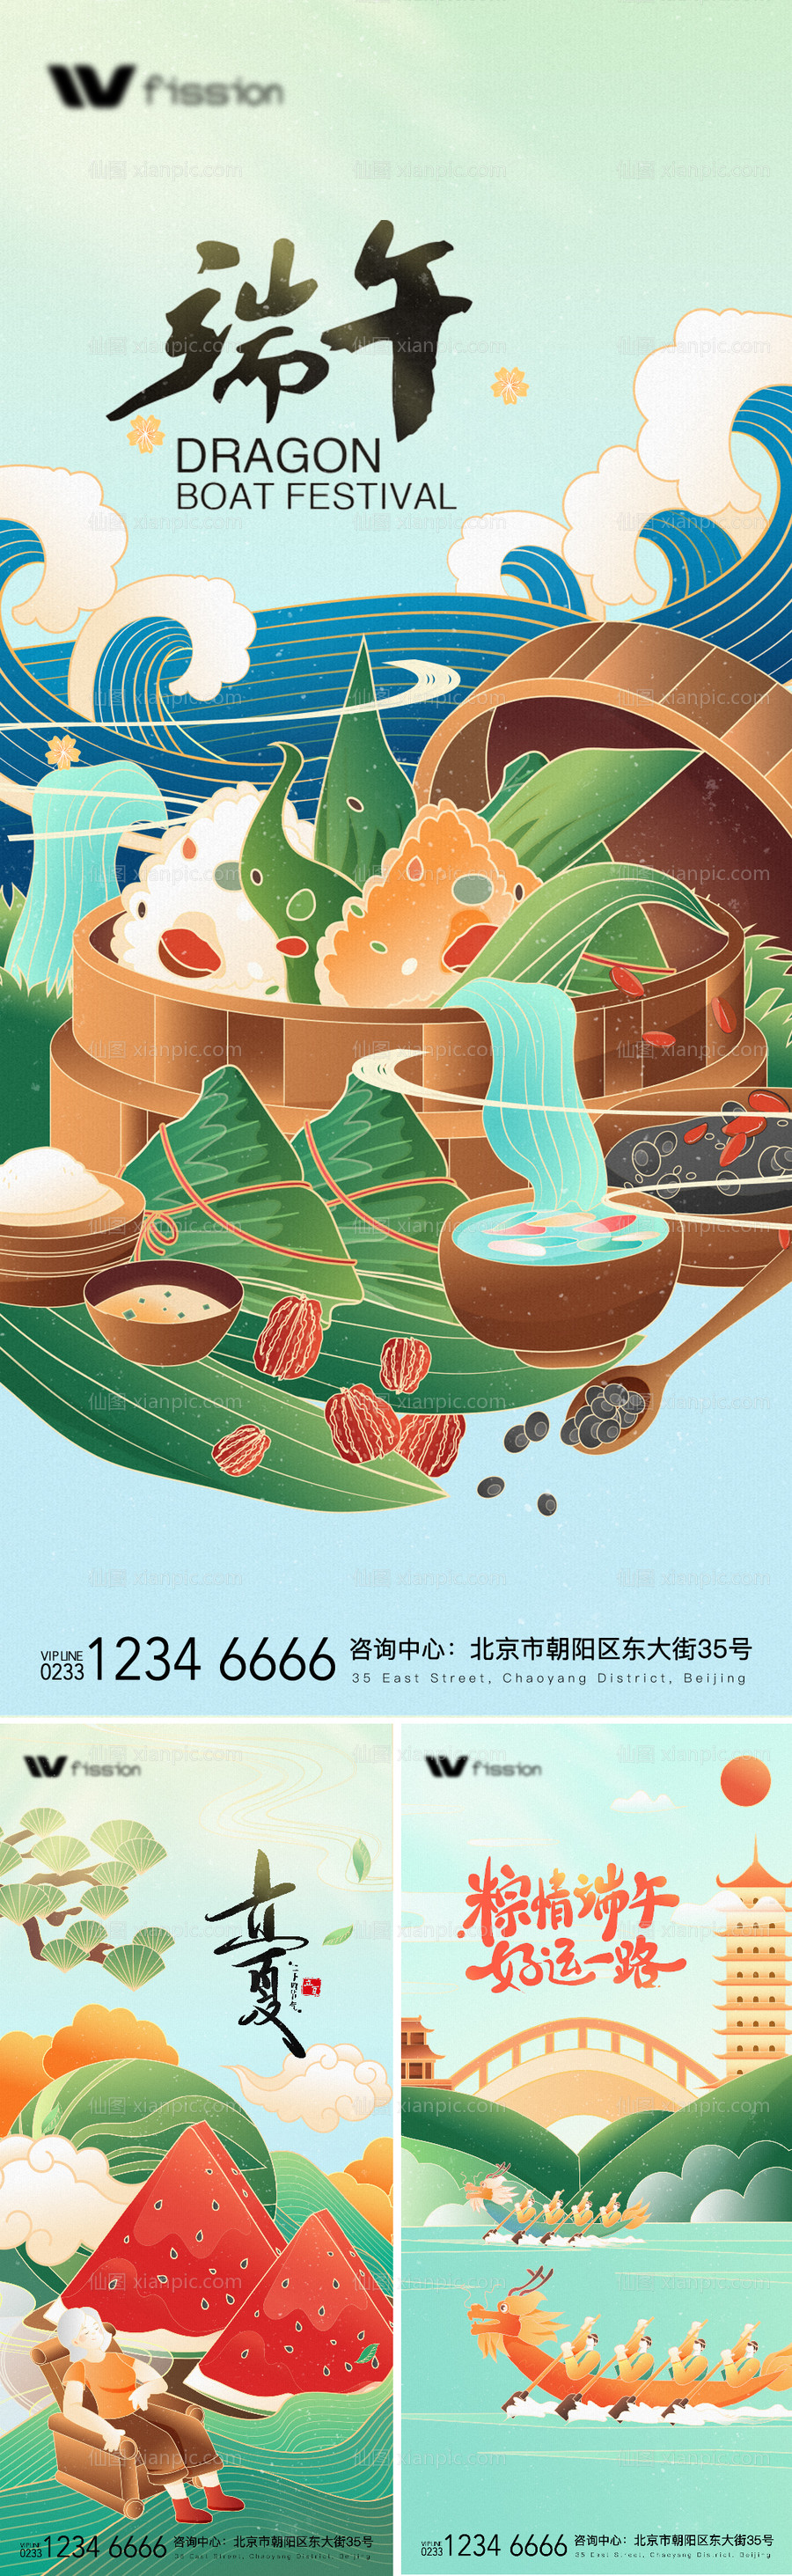 素材乐-立夏端午赛龙舟房地产系列海报